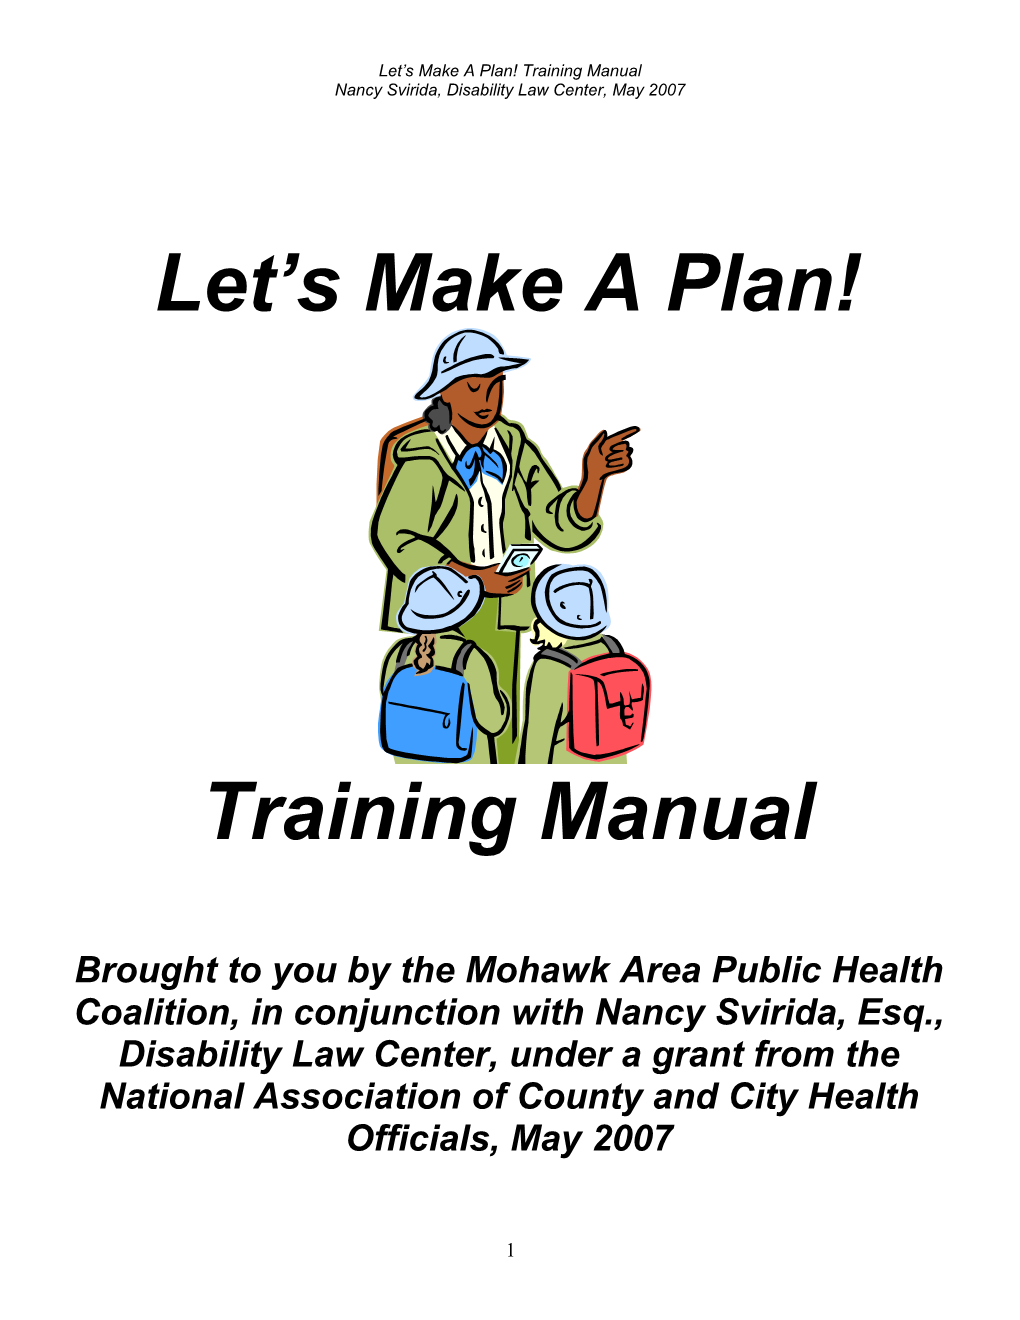 Let S Make a Plan! Training Manual